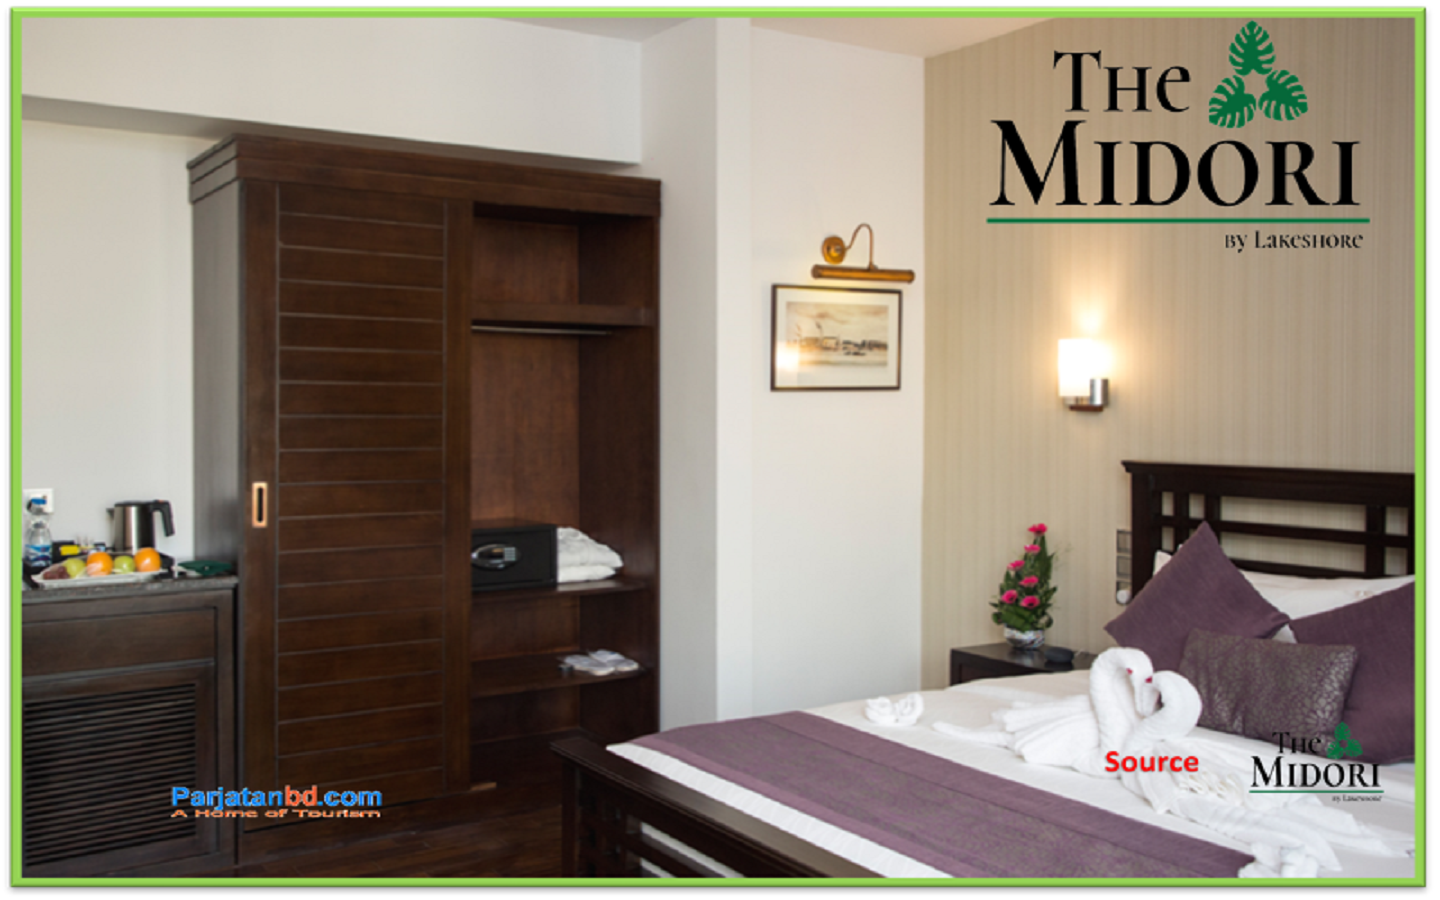 Room Premium Suite -1, The Midori by Lakeshore, Gulshan 2